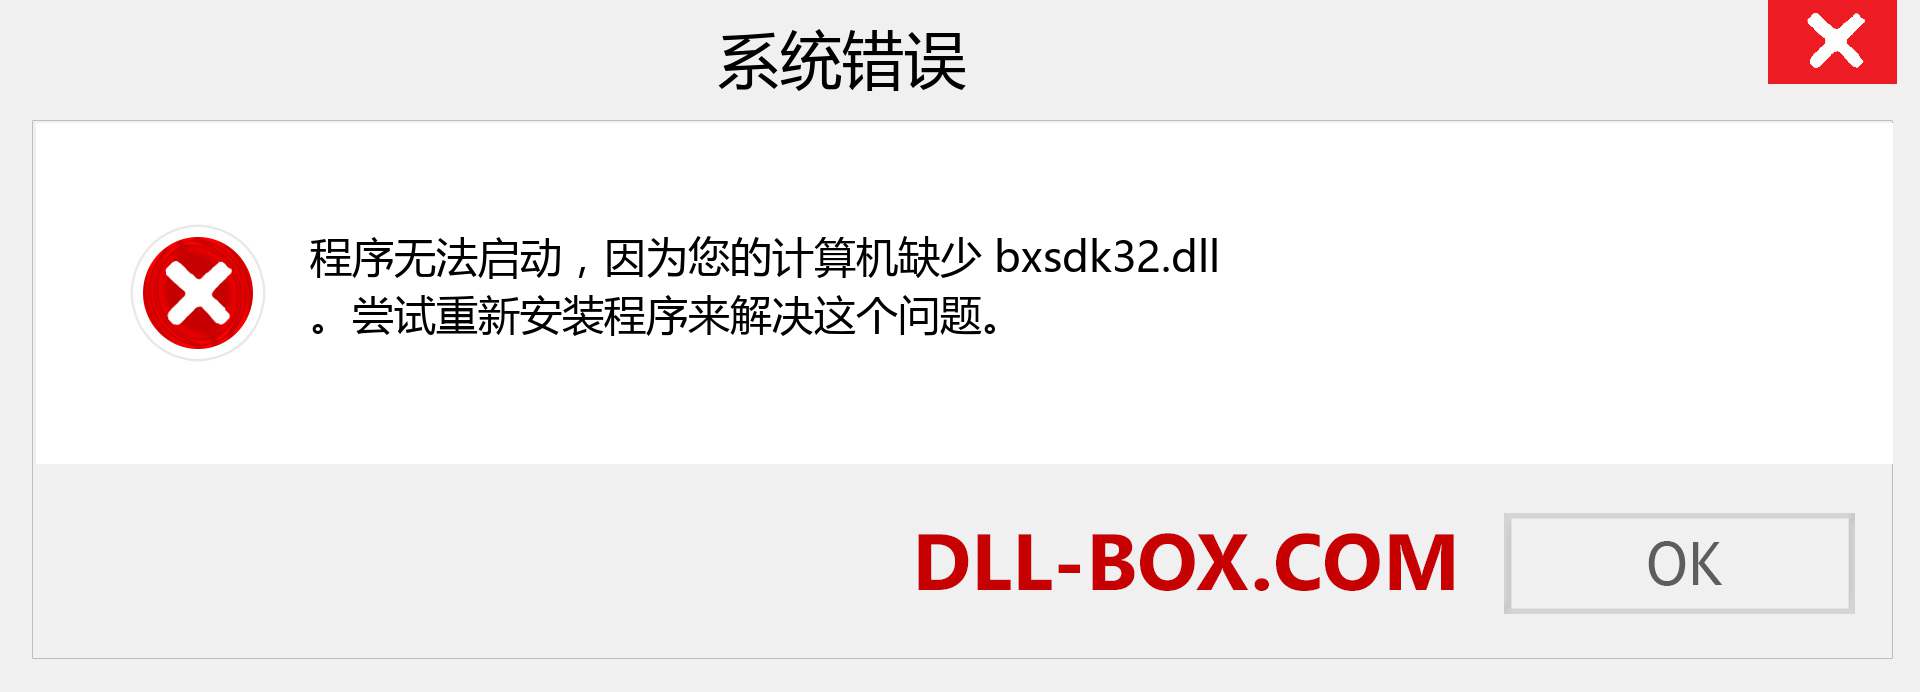 bxsdk32.dll 文件丢失？。 适用于 Windows 7、8、10 的下载 - 修复 Windows、照片、图像上的 bxsdk32 dll 丢失错误